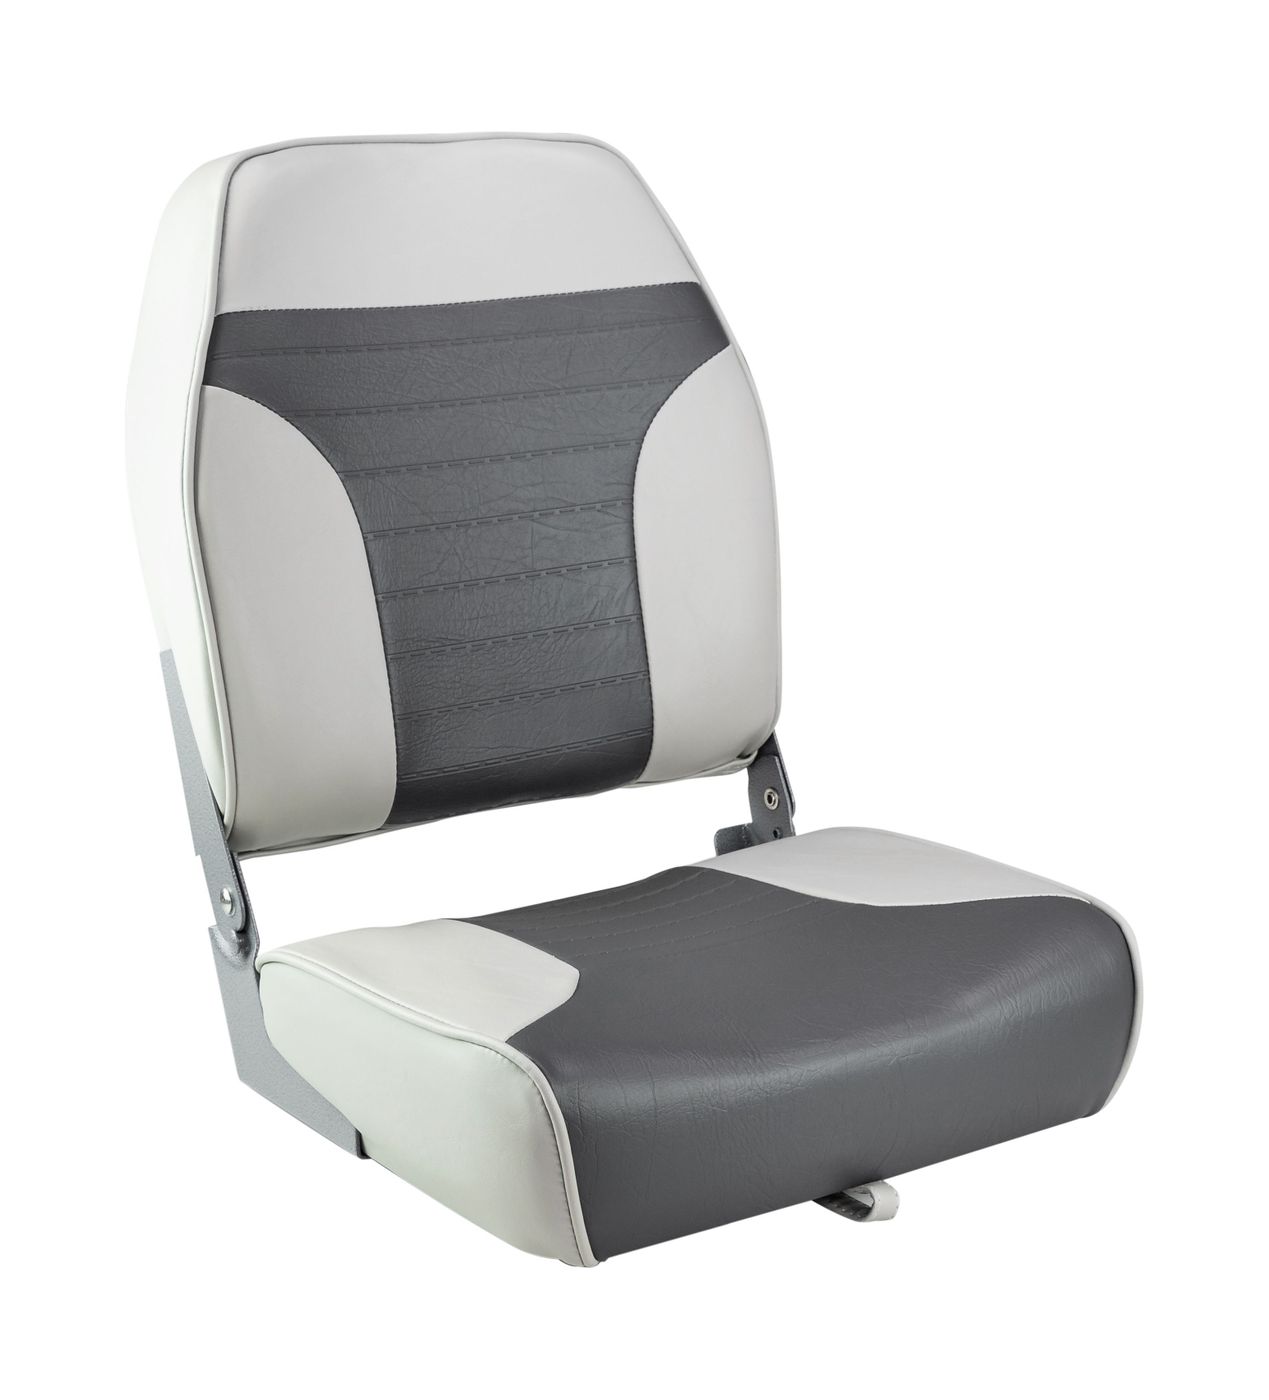 Кресло складное мягкое ECONOMY с высокой спинкой, цвет серый/темно-серый 1040663 кресло складное мягкое traveler обивка камуфляжная ткань duck blind 1061108c